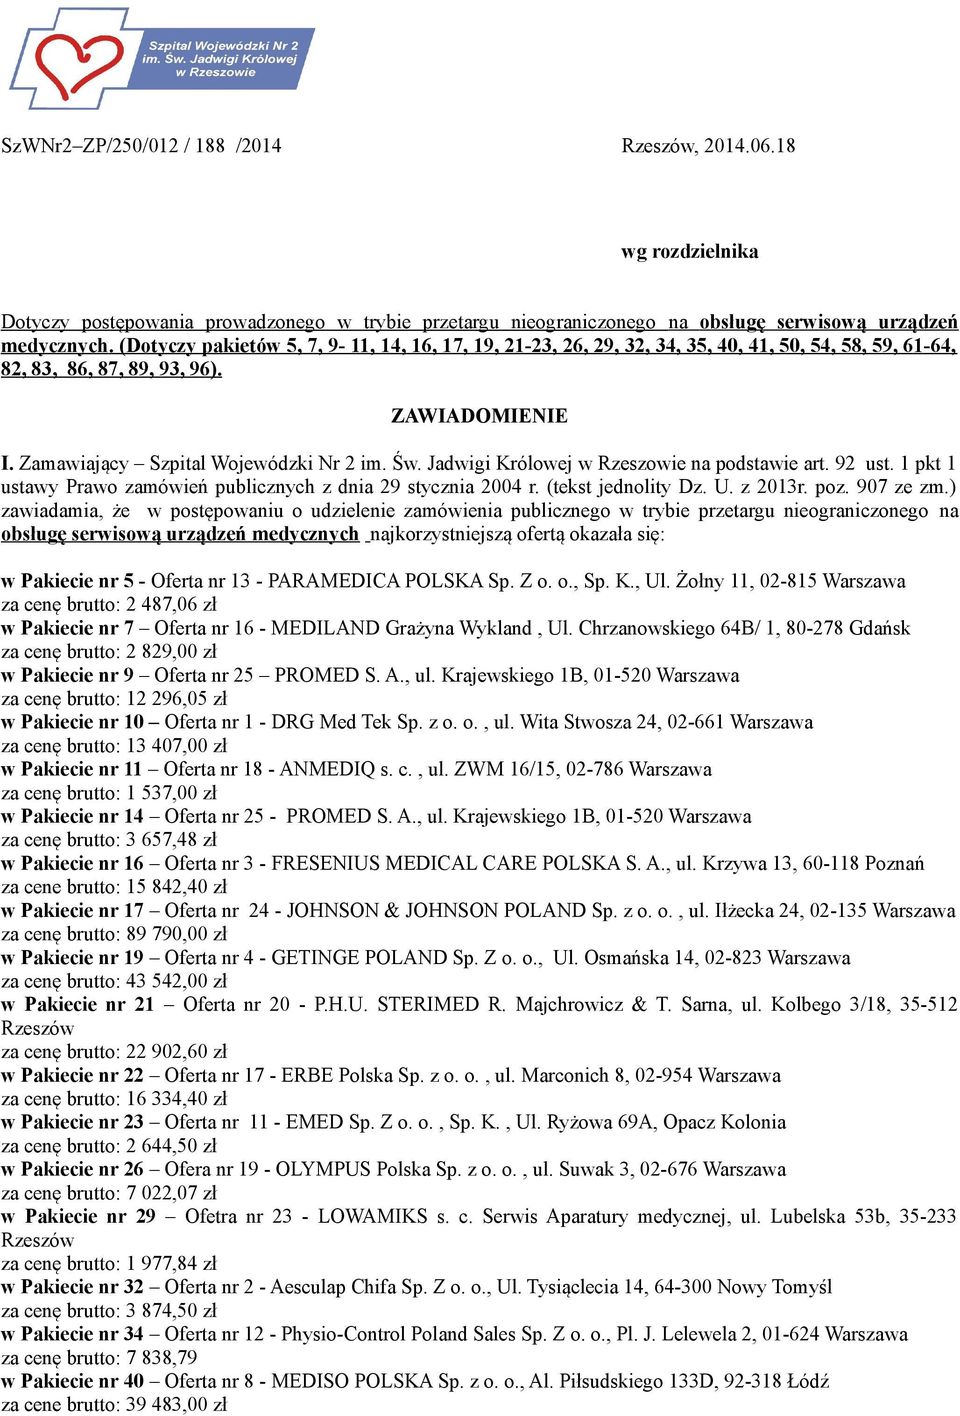 Jadwigi Królowej w Rzeszowie na podstawie art. 92 ust. 1 pkt 1 ustawy Prawo zamówień publicznych z dnia 29 stycznia 2004 r. (tekst jednolity Dz. U. z 2013r. poz. 907 ze zm.